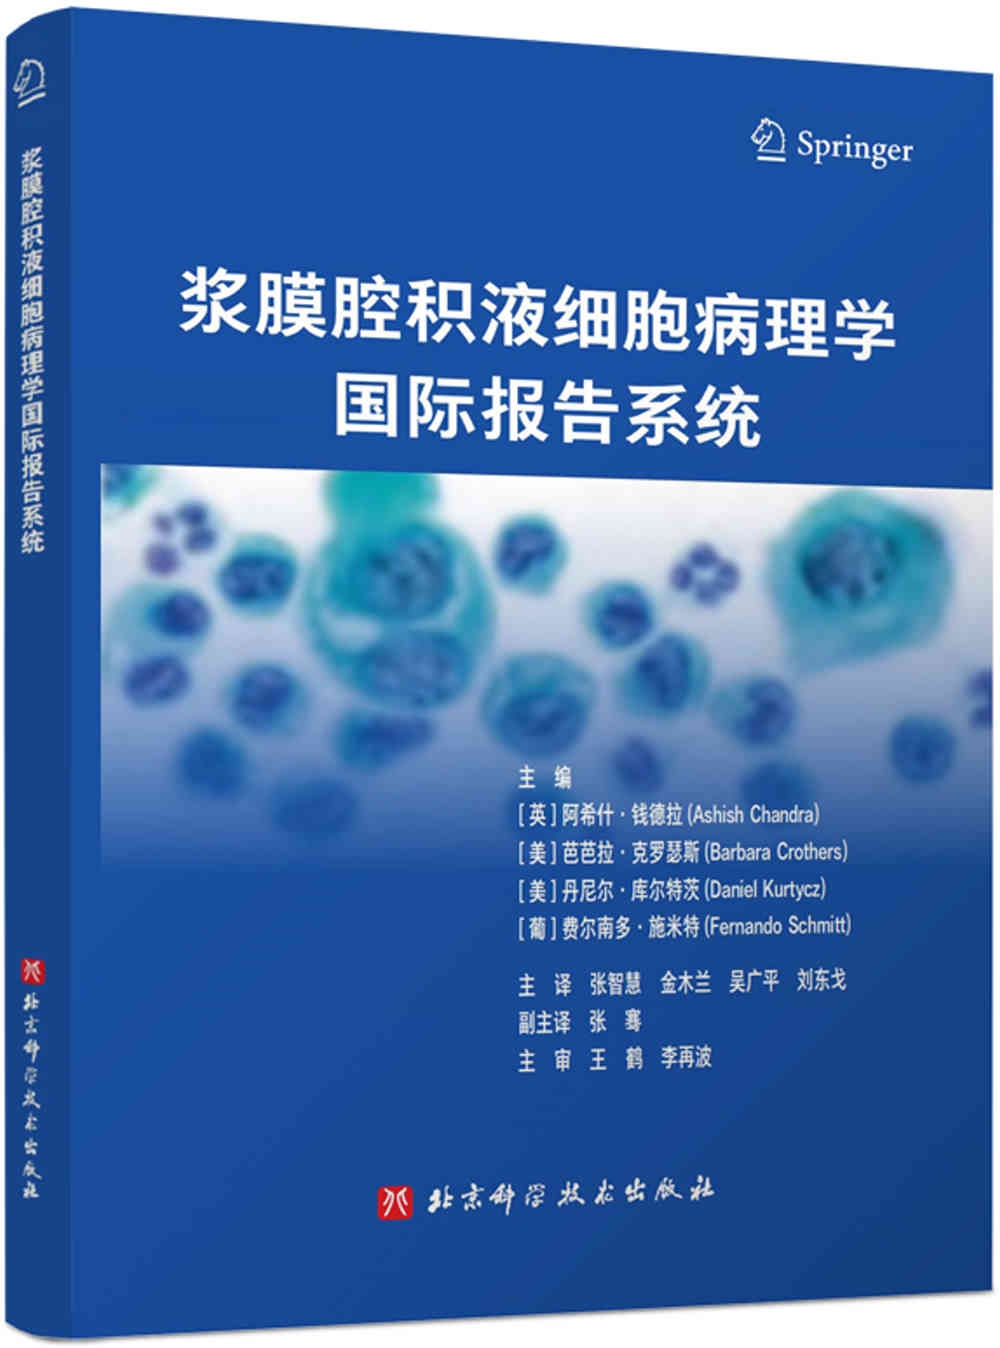 漿膜腔積液細胞病理學國際報告系統